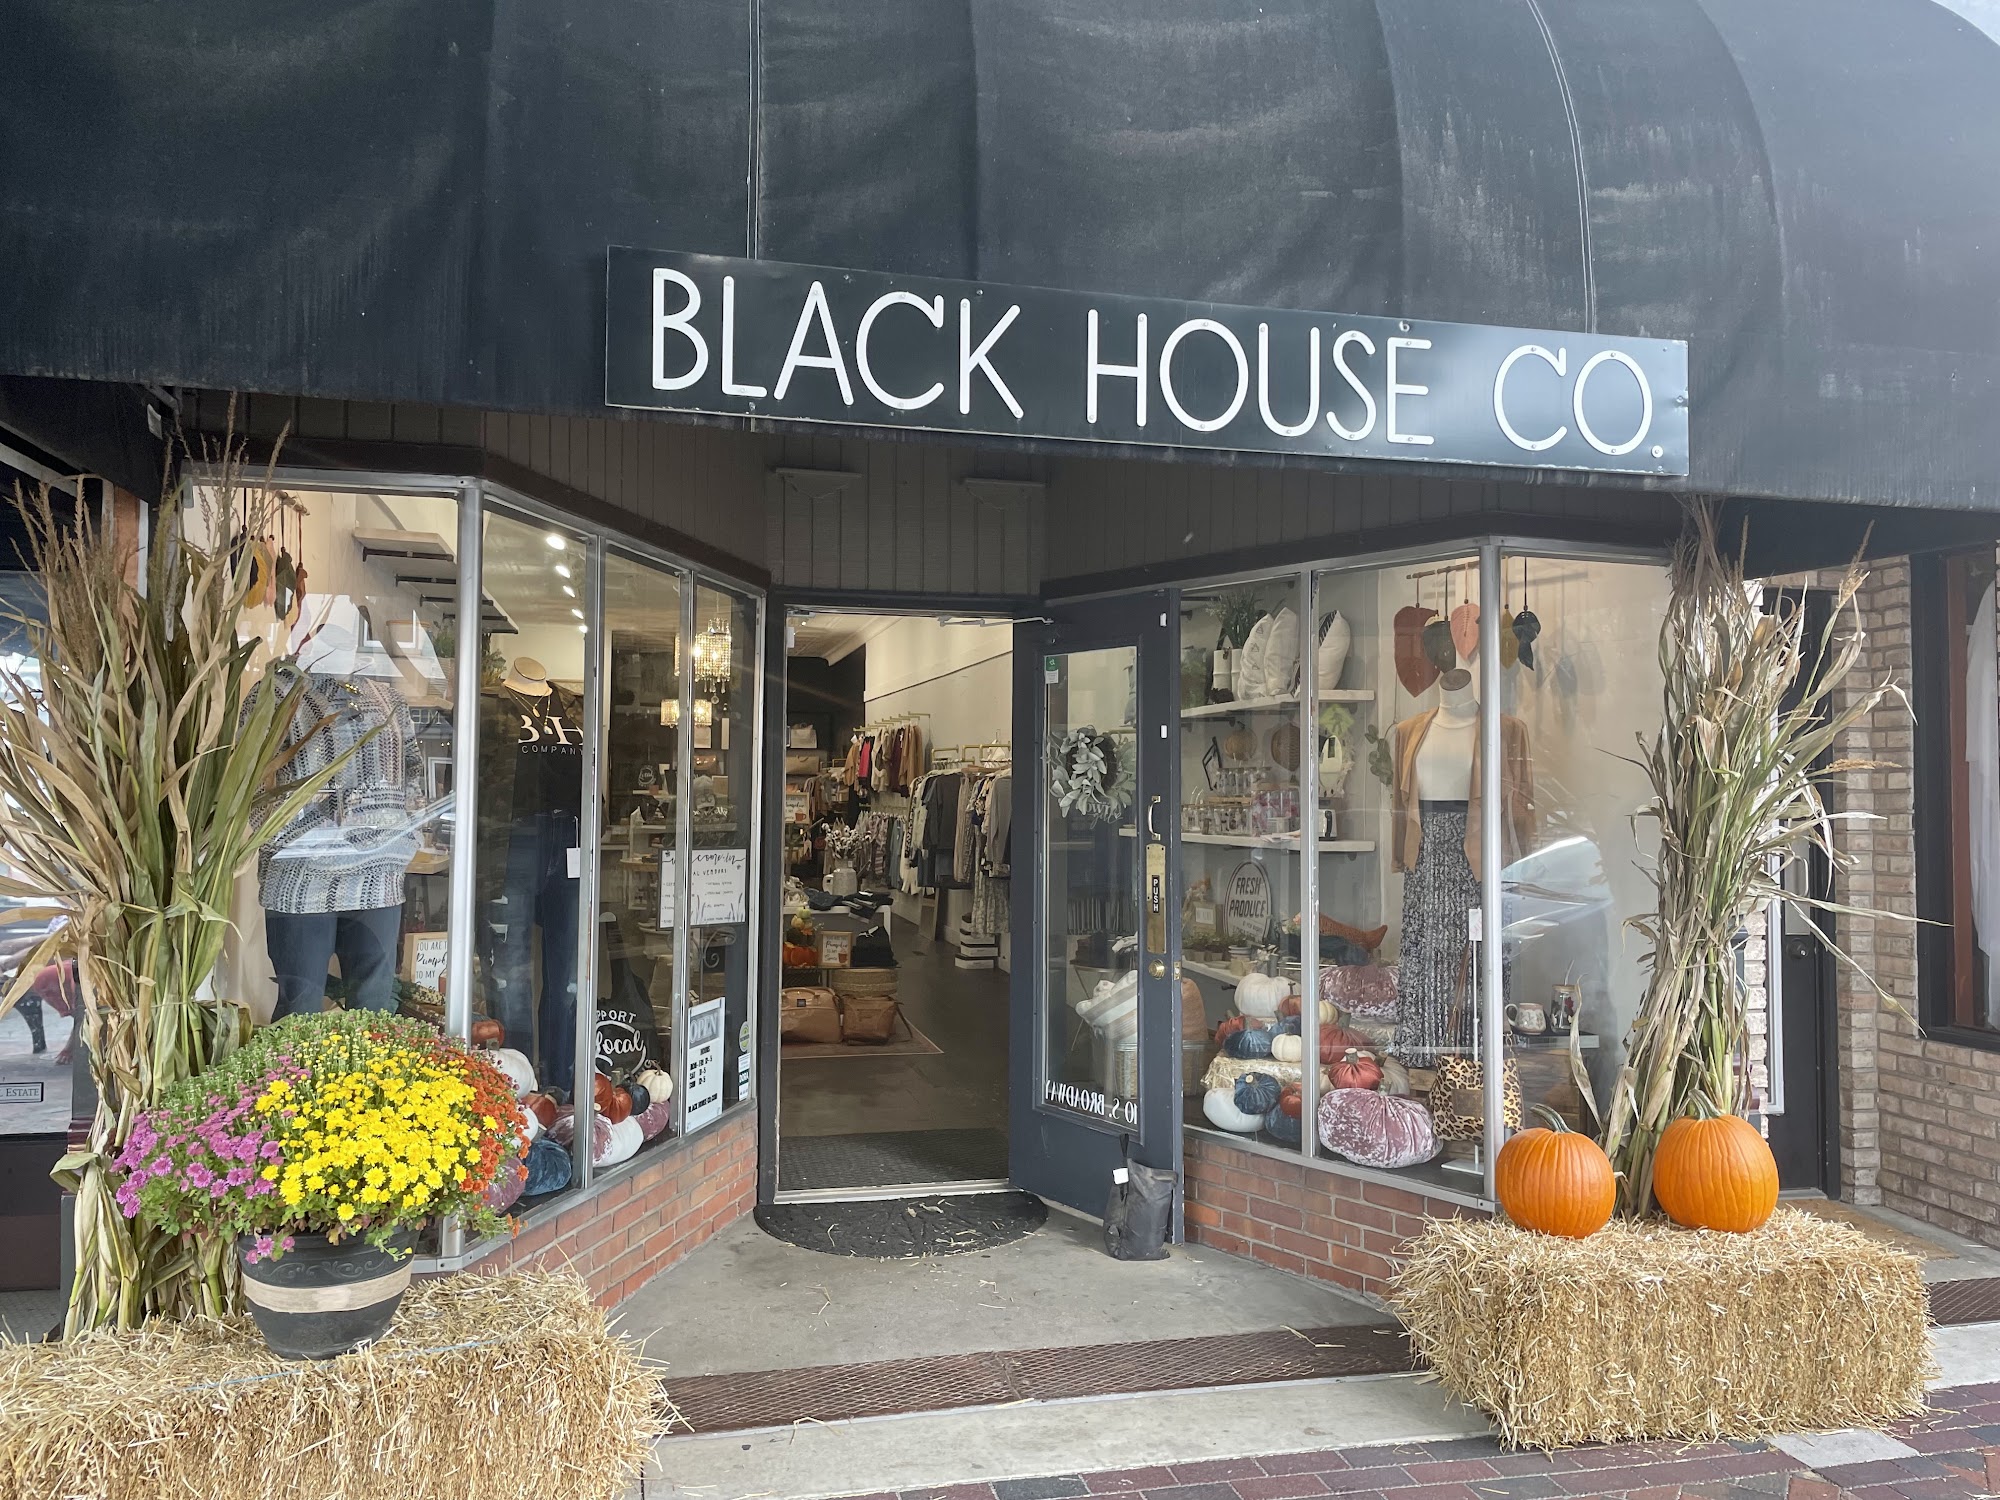 Black House Co. Lebanon